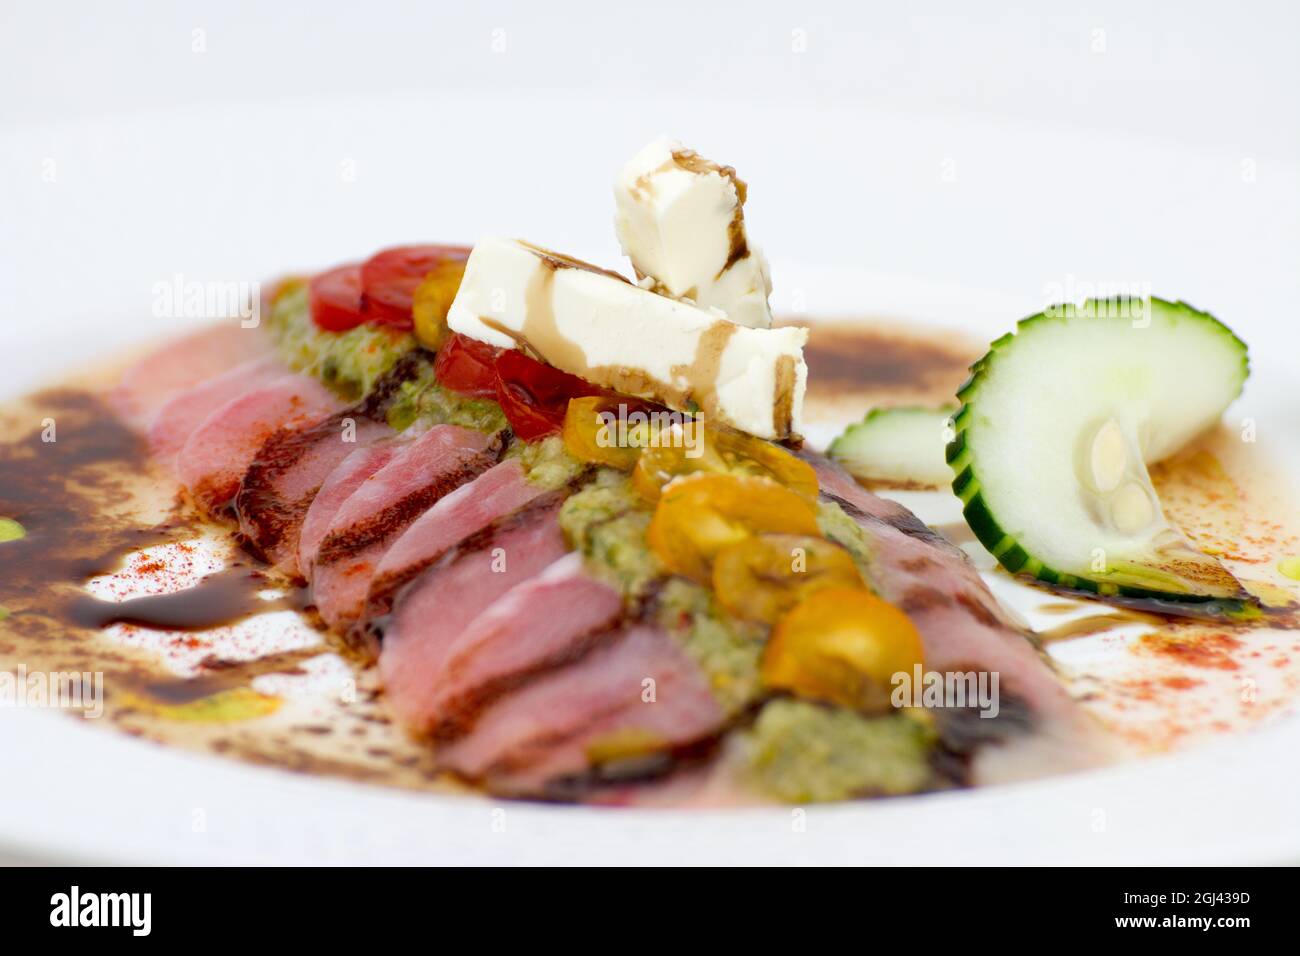 Assiette gastronomique avec viande et feta Photo Stock - Alamy